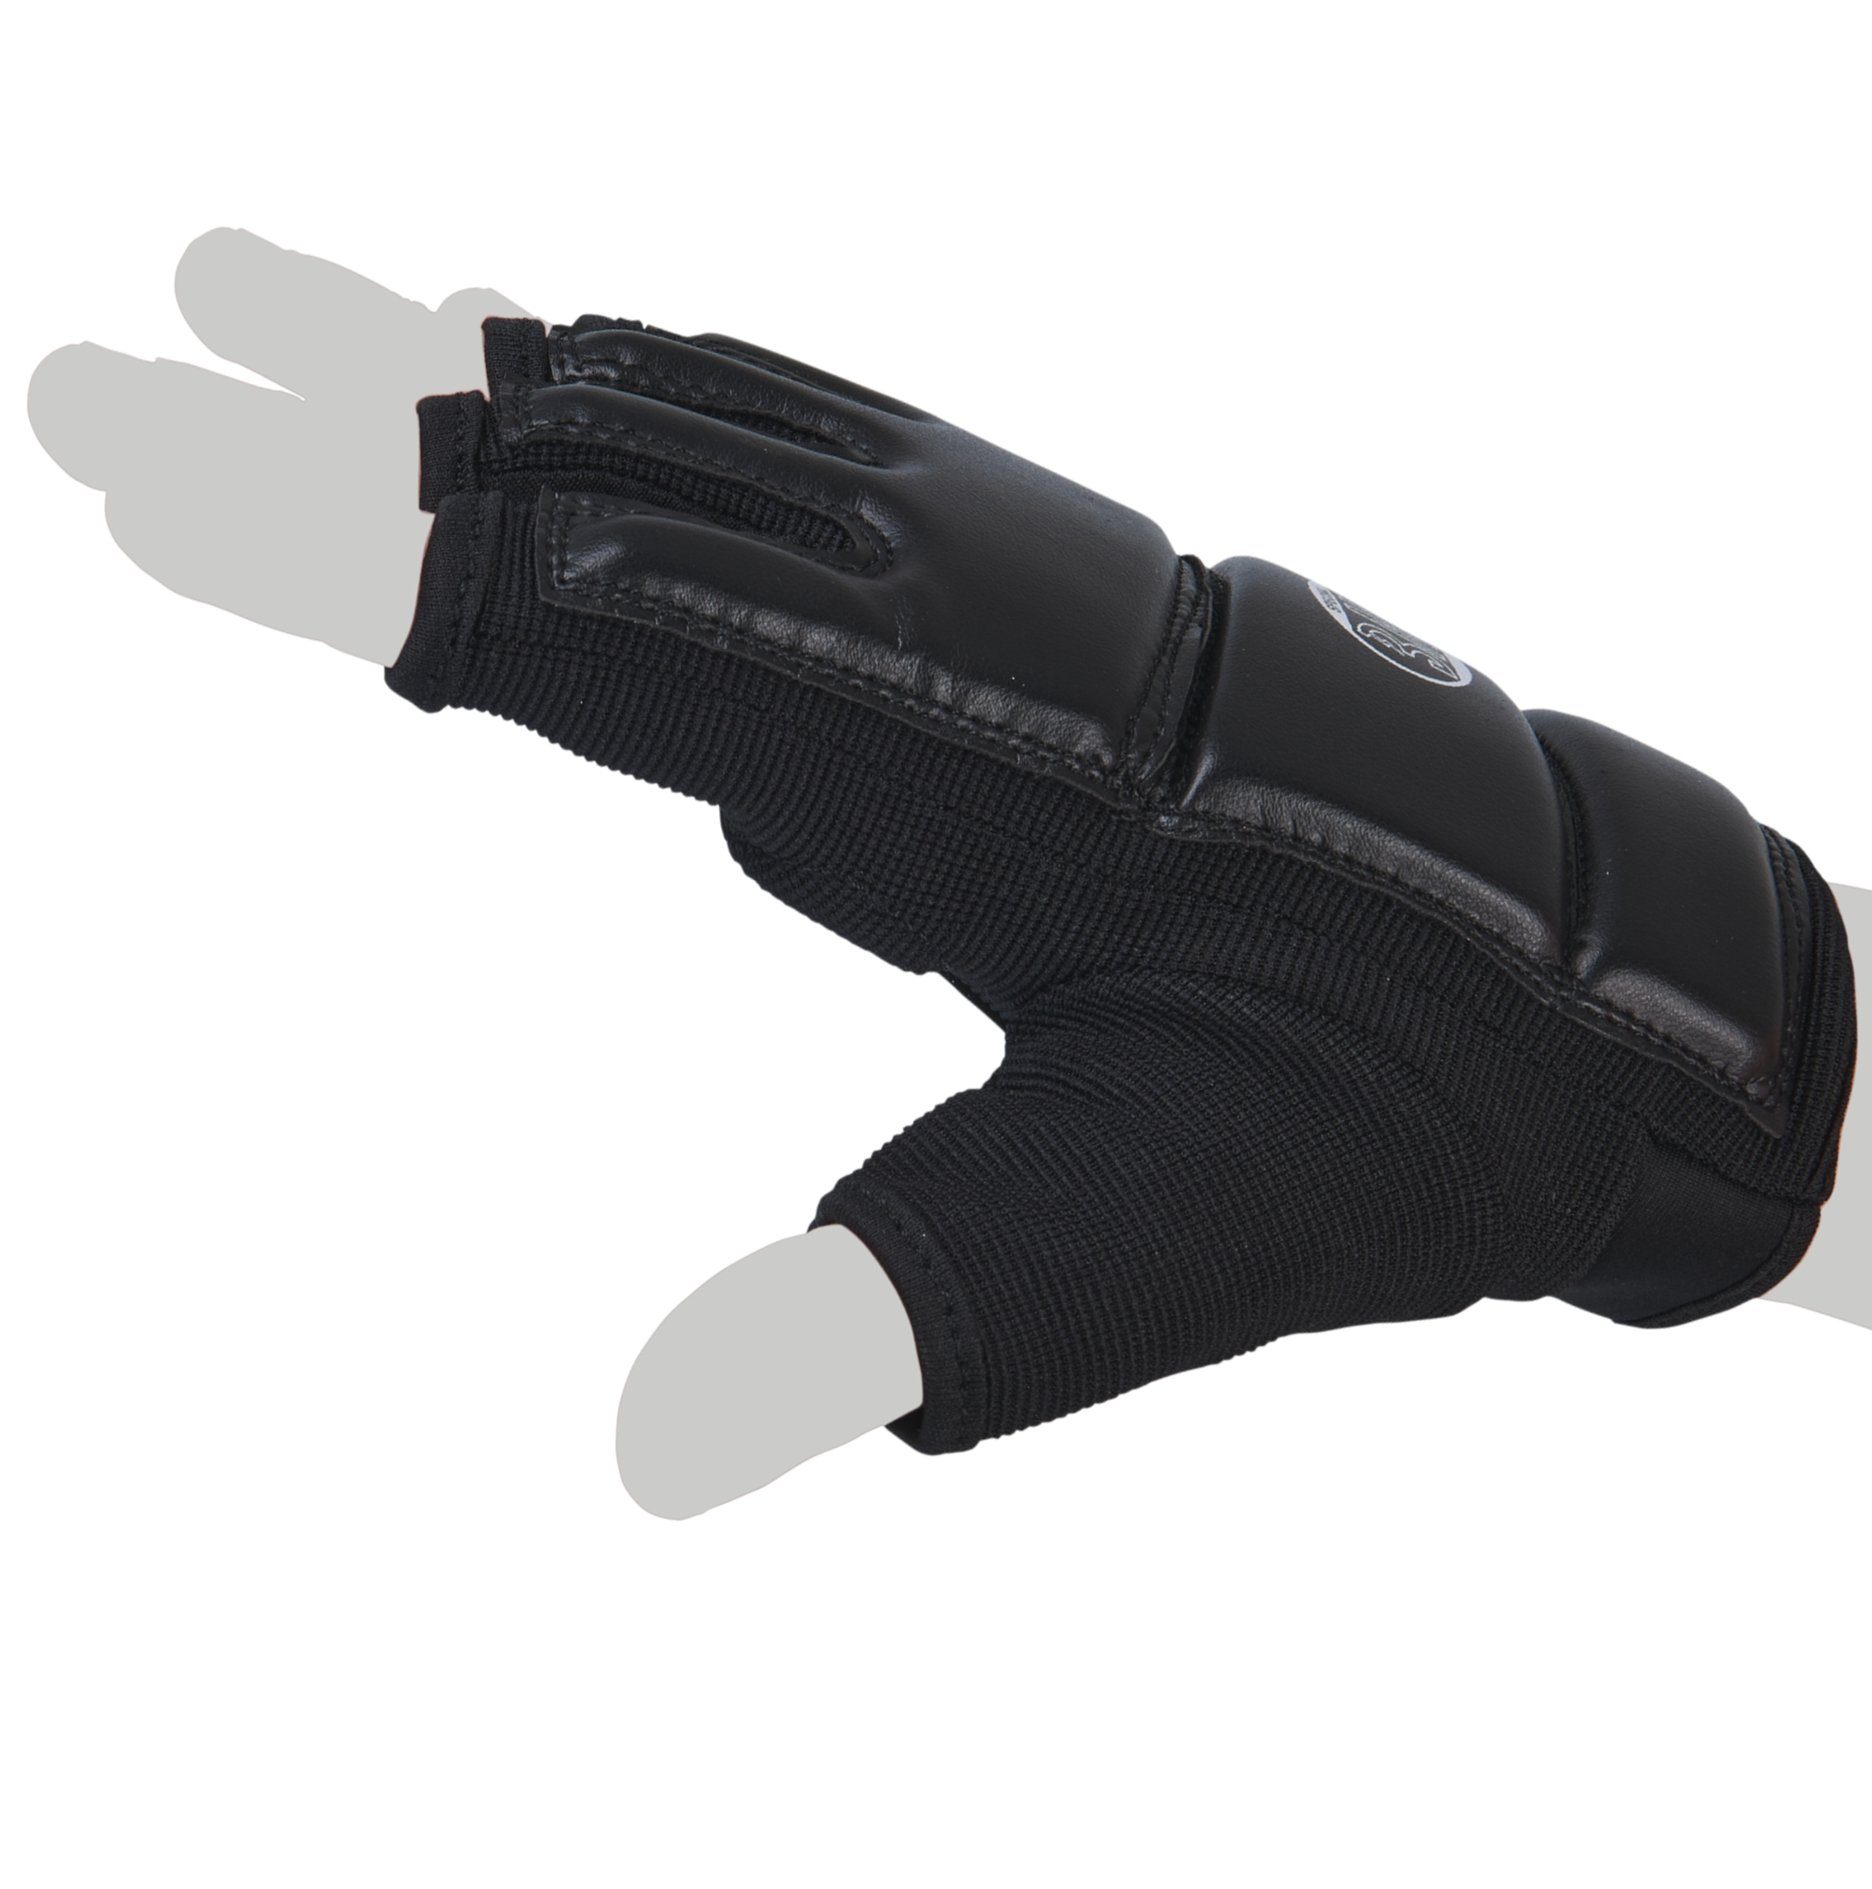 BAY-Sports Sandsackhandschuhe Touch schwarz, Handschutz Erwachsene Kinder Boxhandschuhe - Boxsack XXL XXS und Sandsack